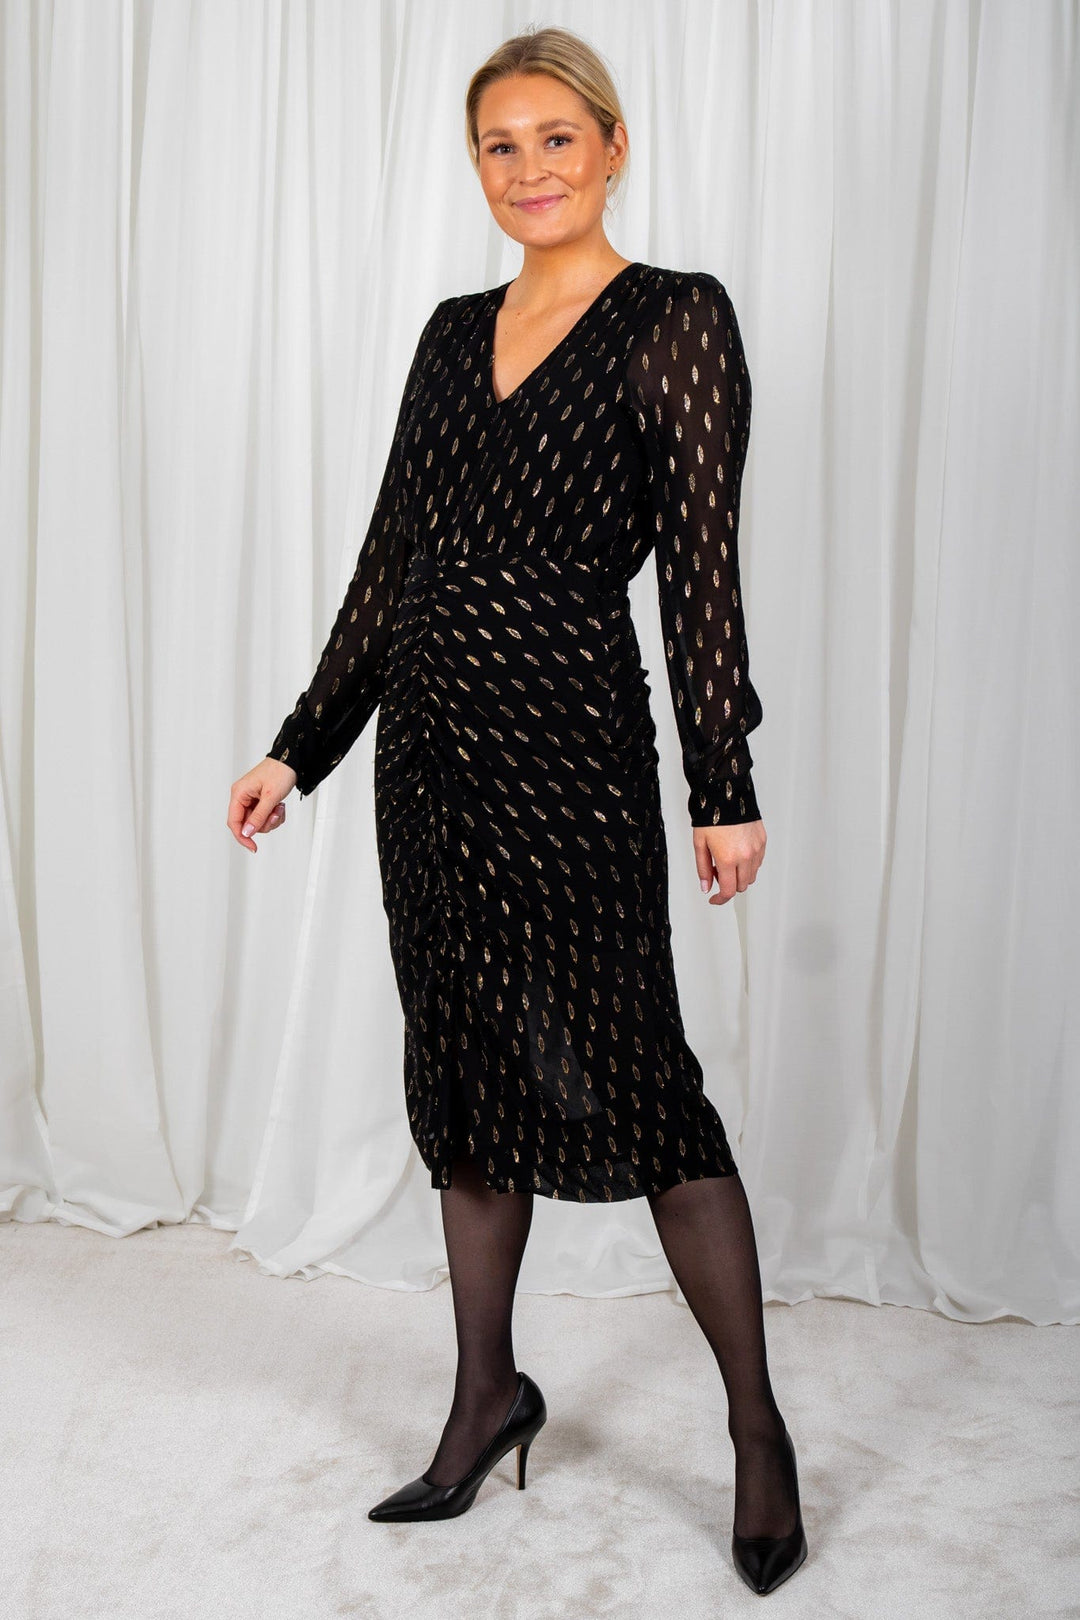 Chavella Dress Black | Kjoler | Smuk - Dameklær på nett